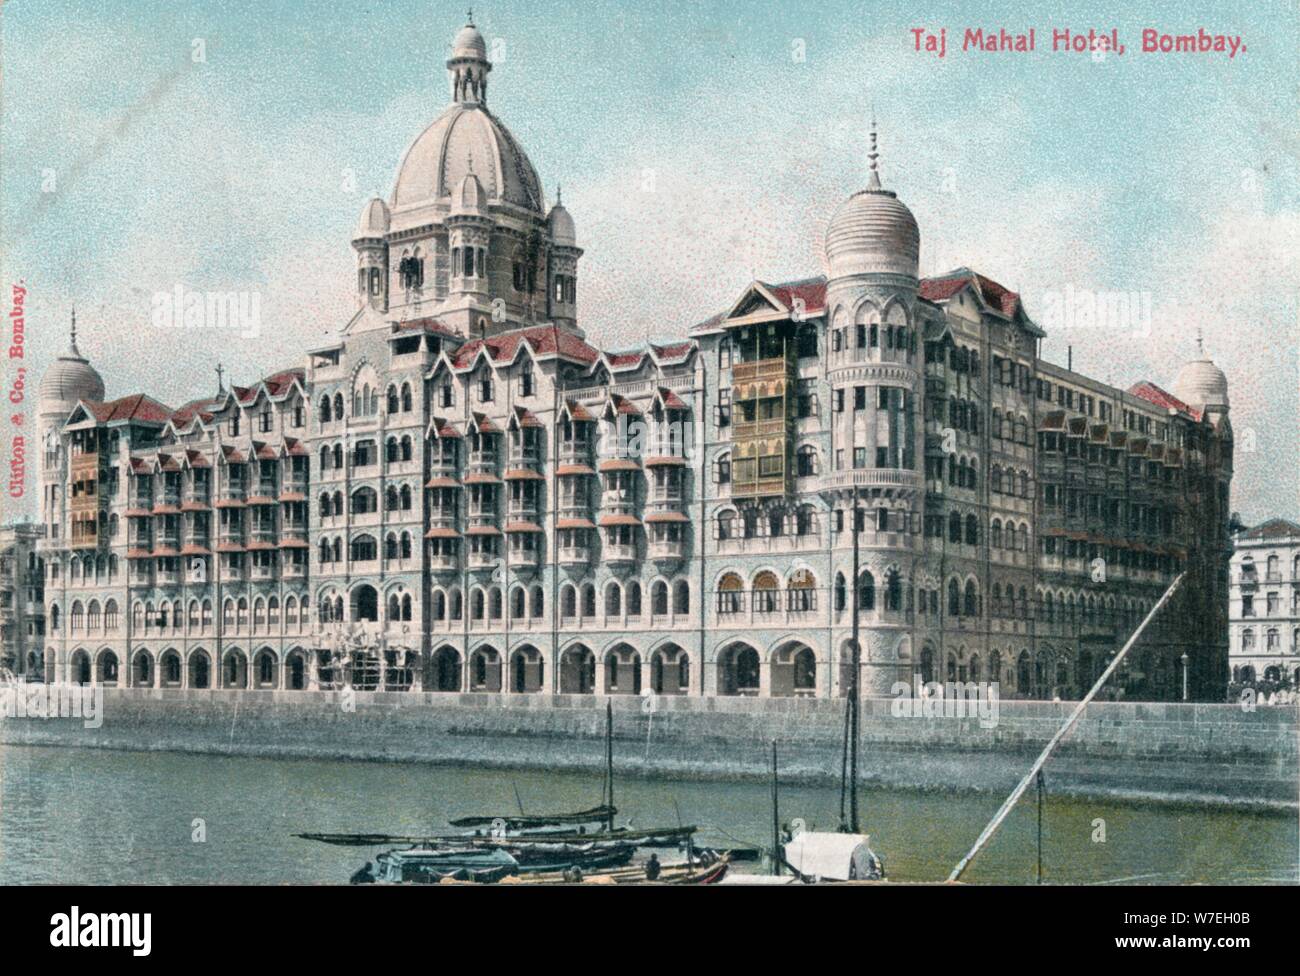 Hôtel Taj Mahal Palace, Bombay, Inde, 20e siècle. Artiste : Inconnu Banque D'Images